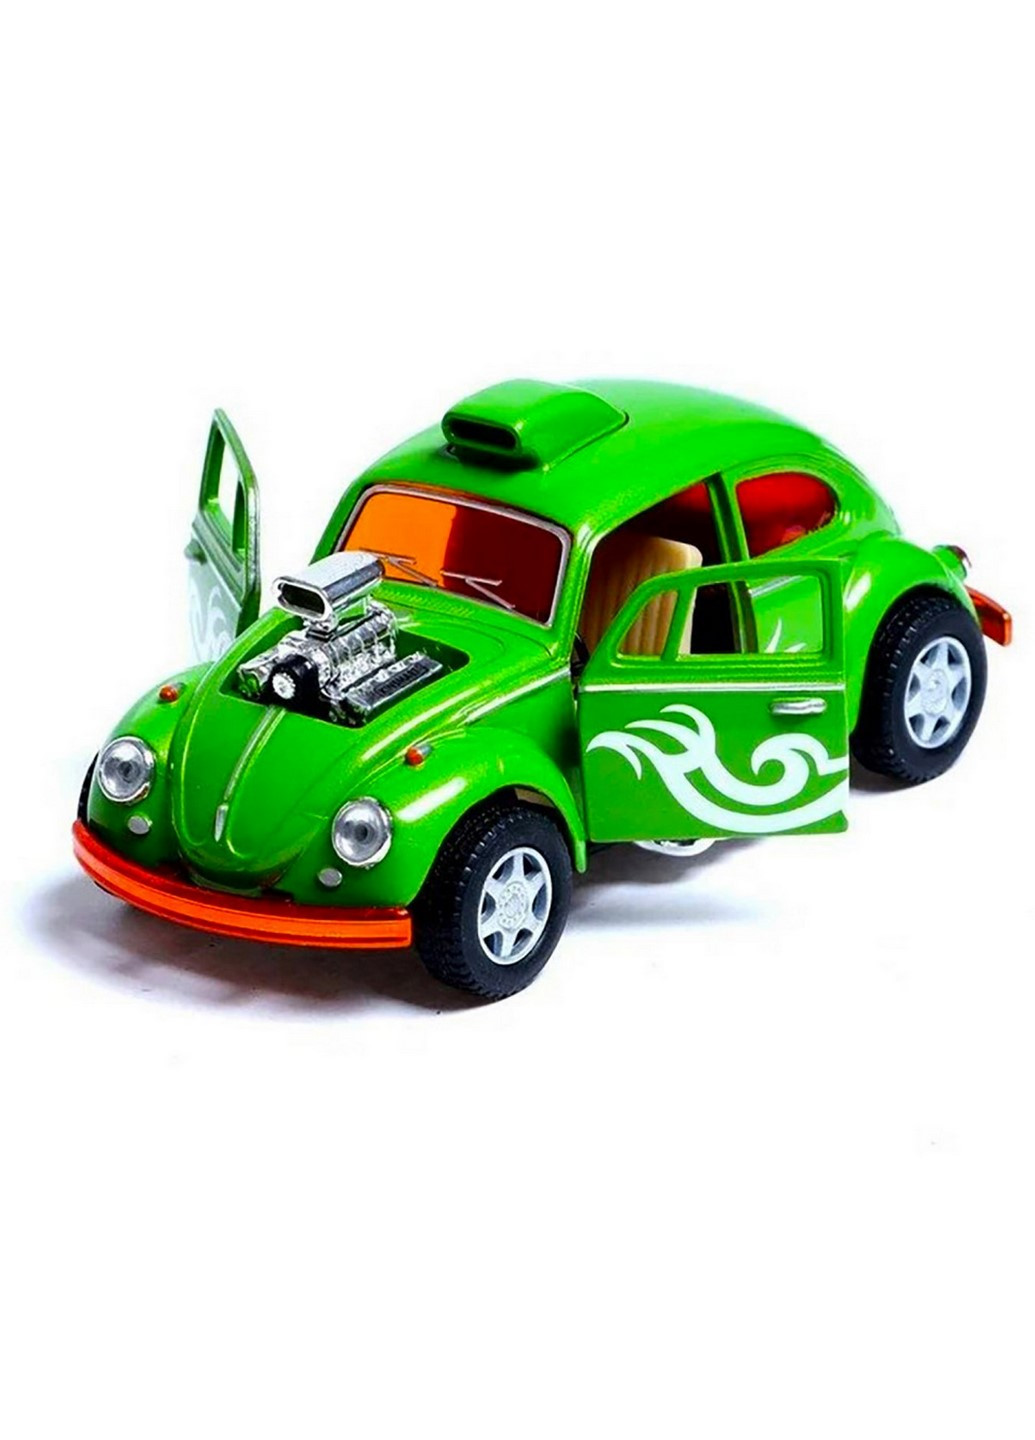 Машинка металлическая Volkswagen Beetle Custom Dragracer KT5405W инерционная 1:32 (Зеленый) Kinsmart (260376908)